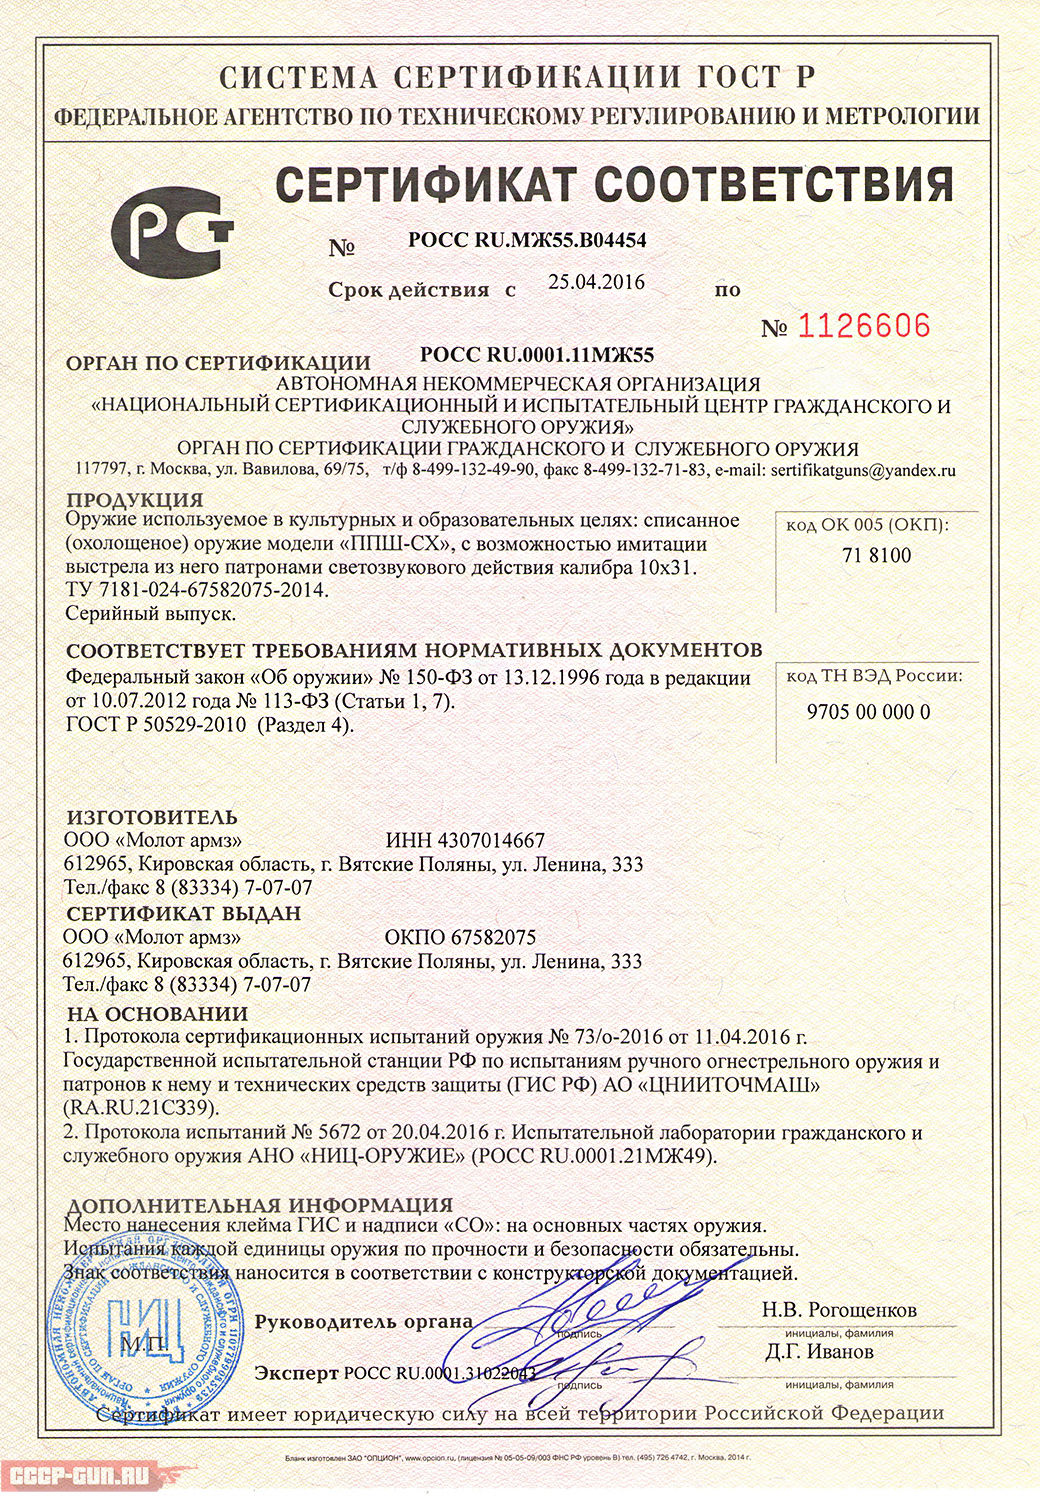 Сертификат на охолощенный пистолет пулемет ППШ СХ (Молот Армз Шпагина) скачать